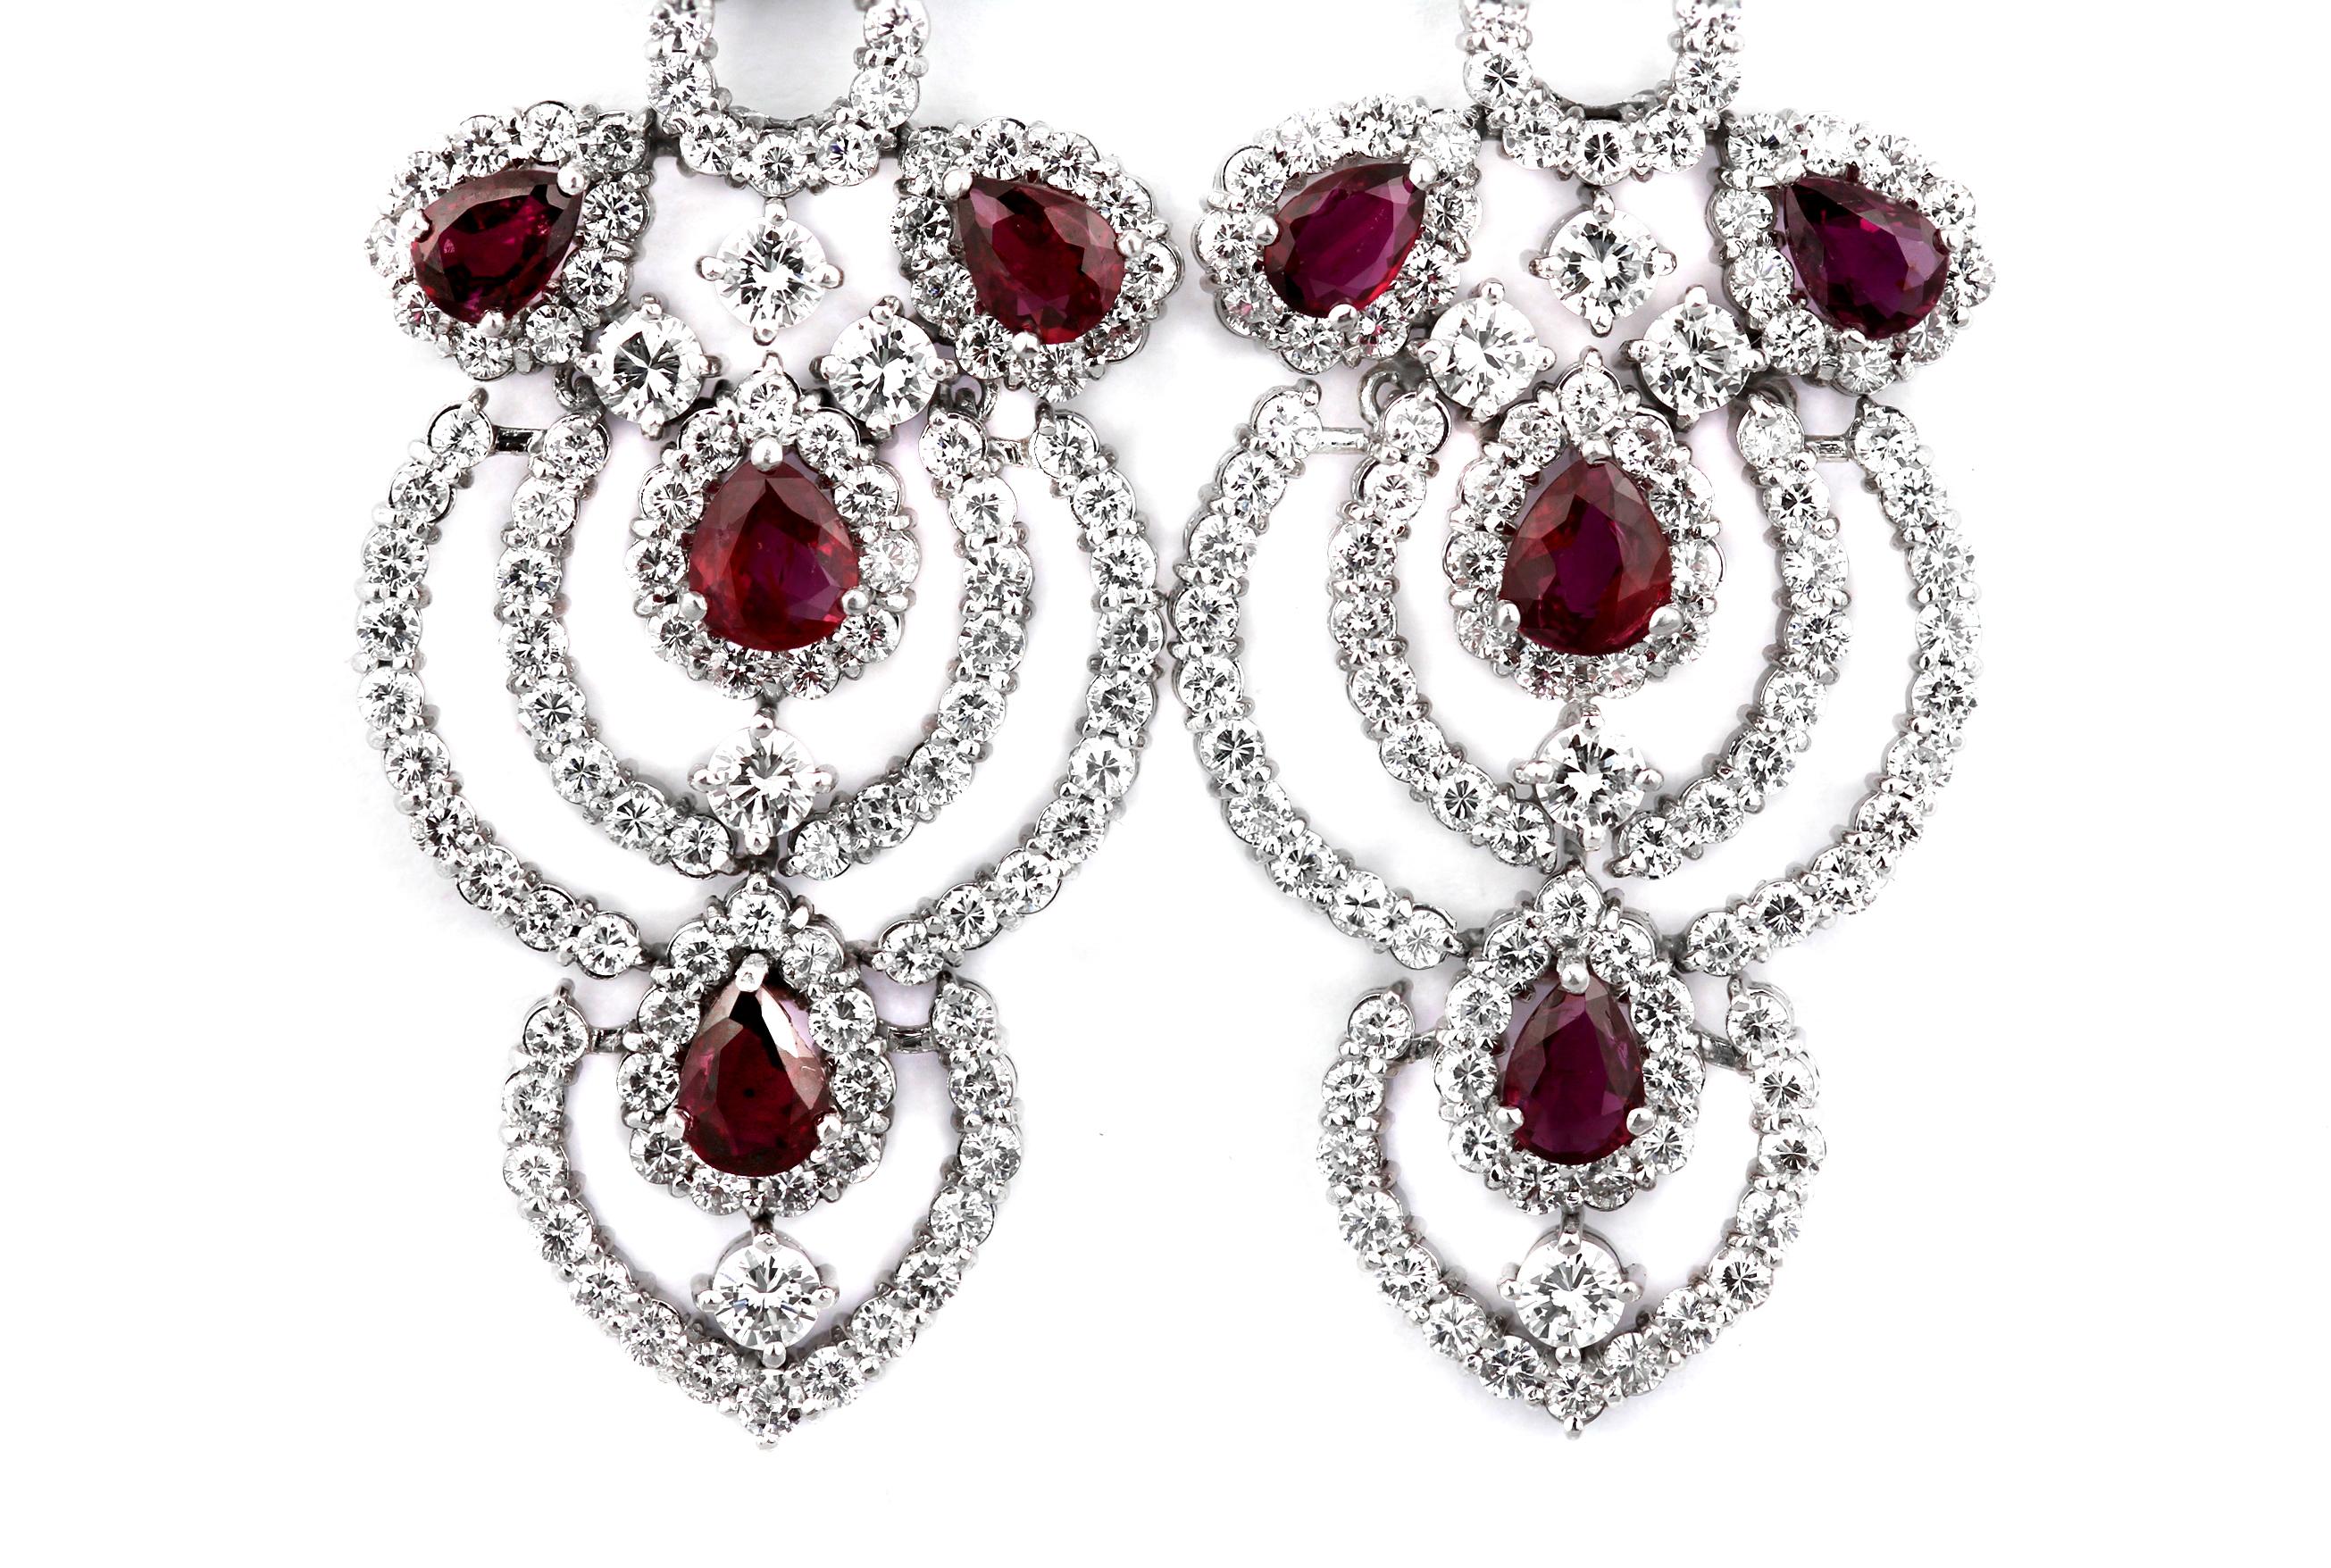 Retro Pair of Ruby & Diamond Drop/Chandelier Earrings in 18K White Gold 1